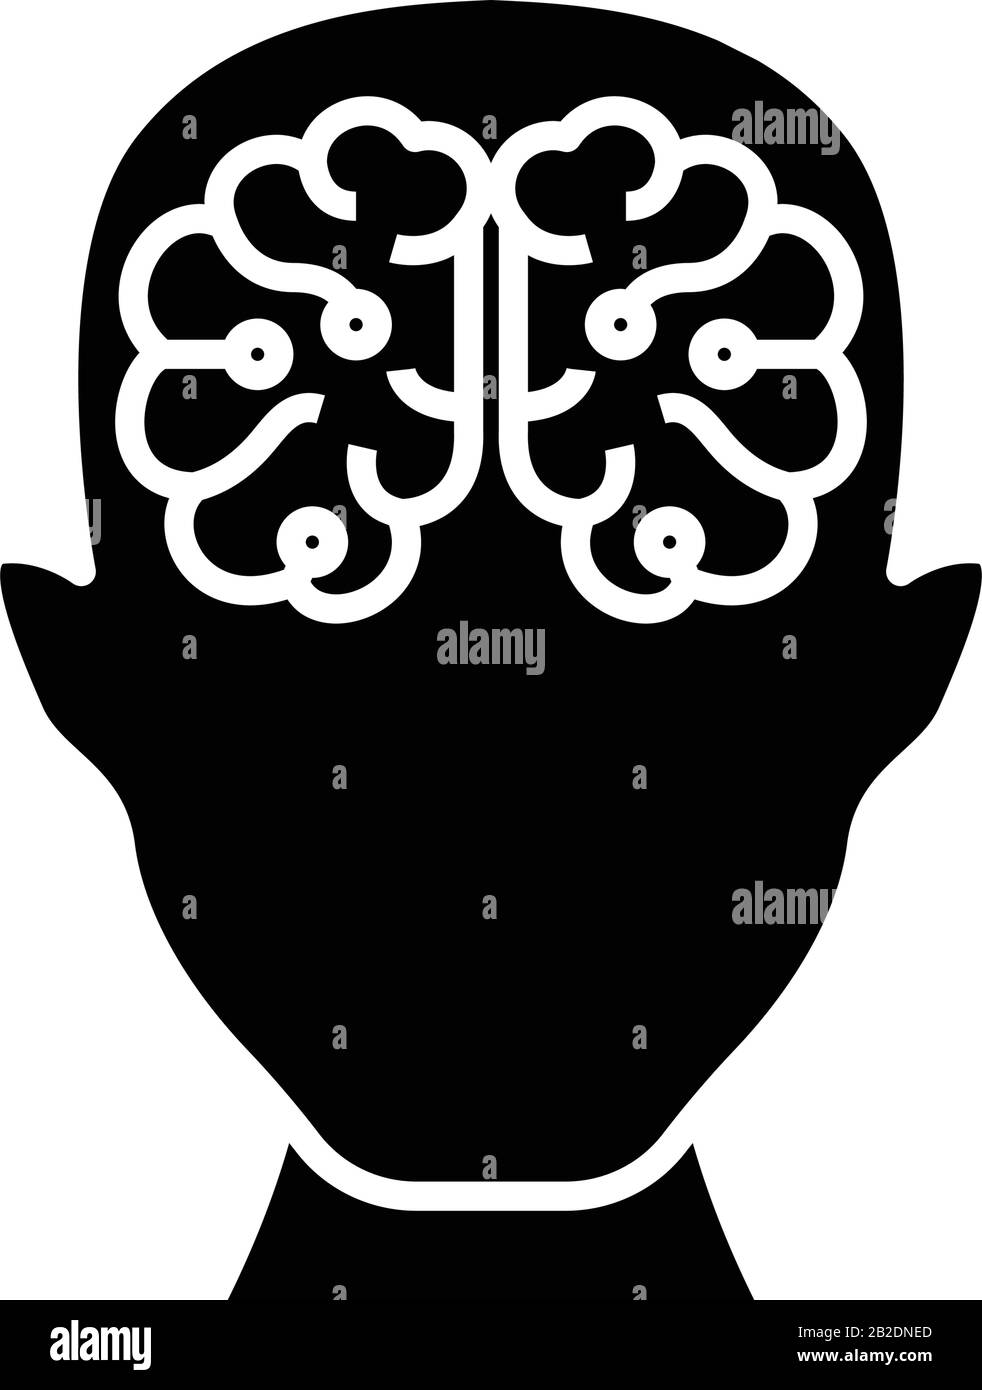 Icona nera del potenziale umano, illustrazione concettuale, simbolo piatto vettoriale, simbolo glifo. Illustrazione Vettoriale